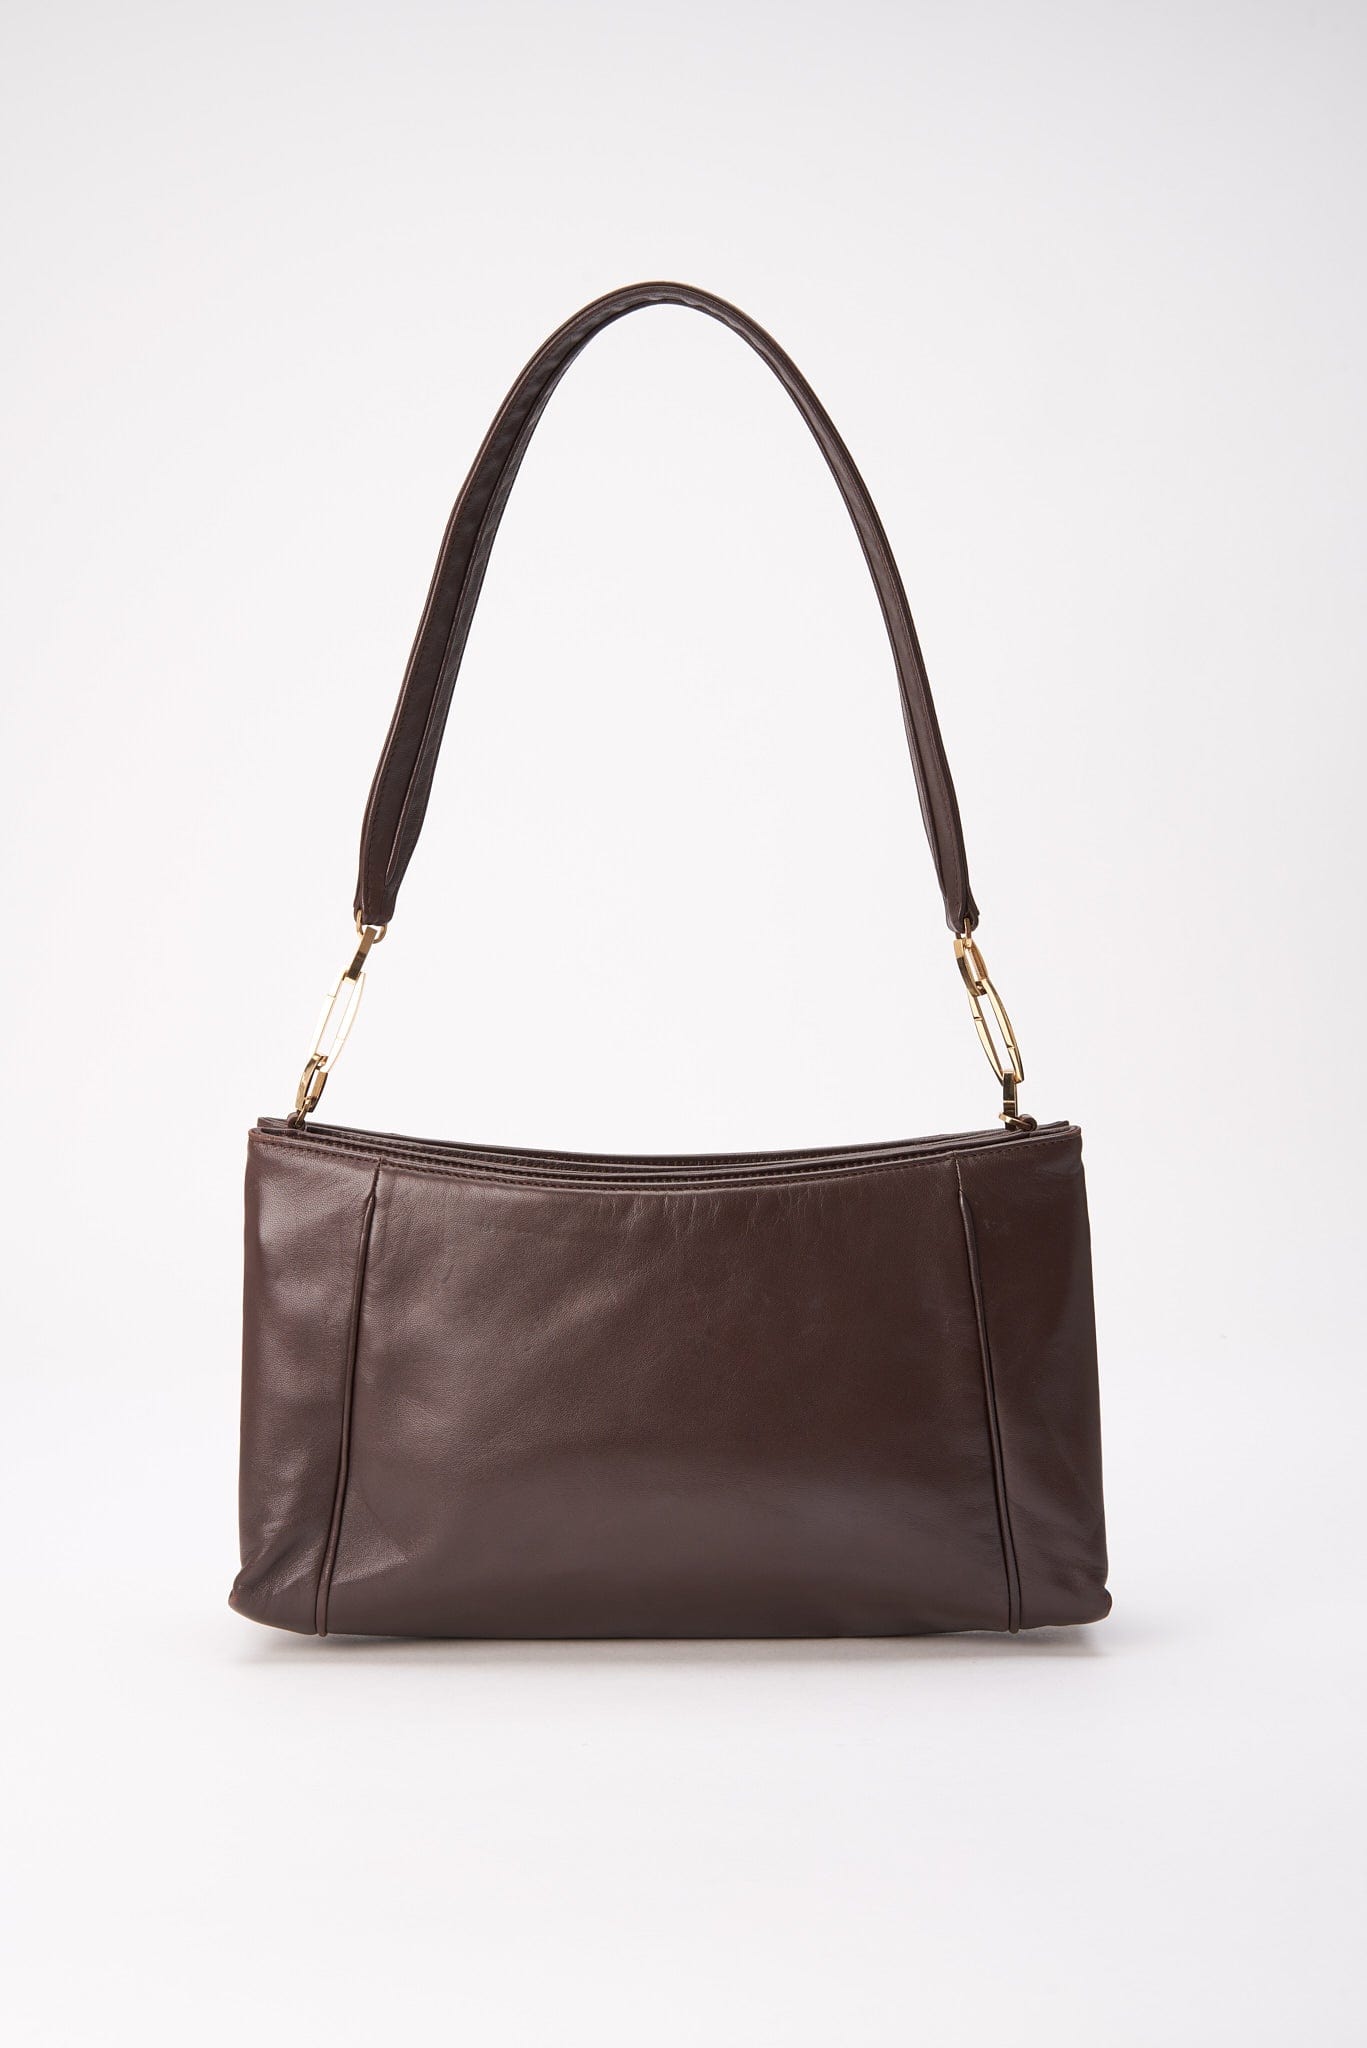 Vintage Loewe Brown Leather Shoulder Bag